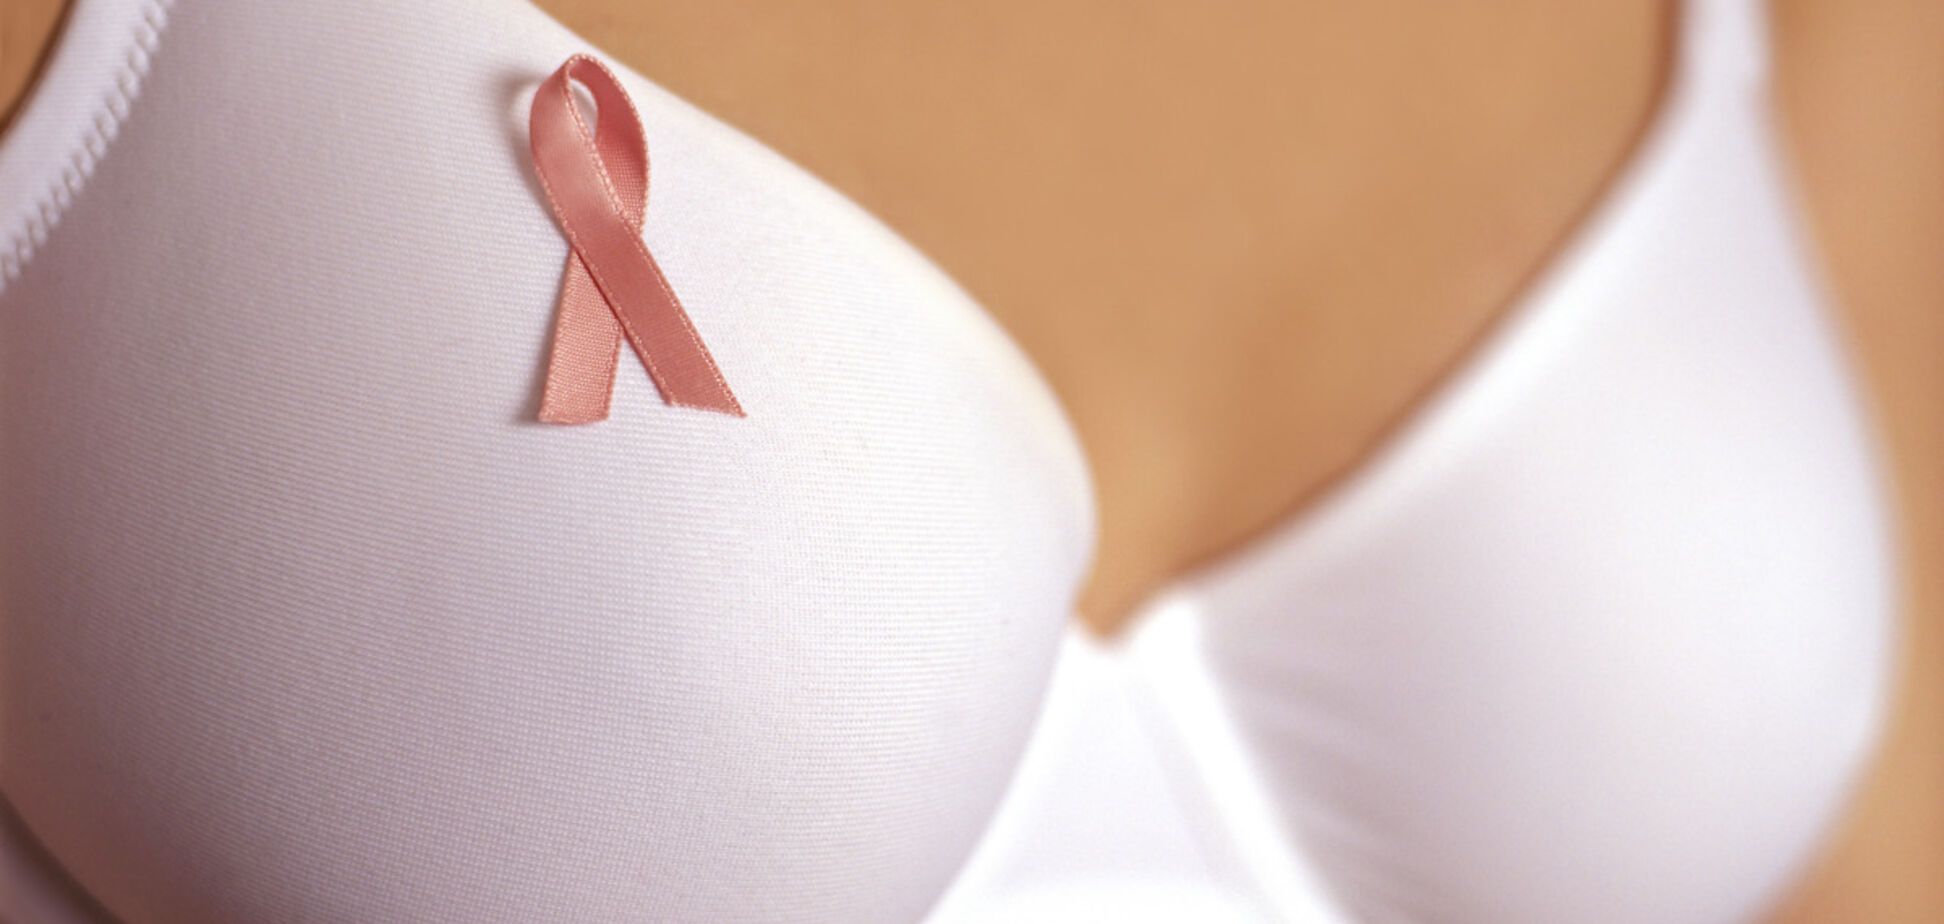 Американские ученые придумали гаджет, предупреждающий о раке груди